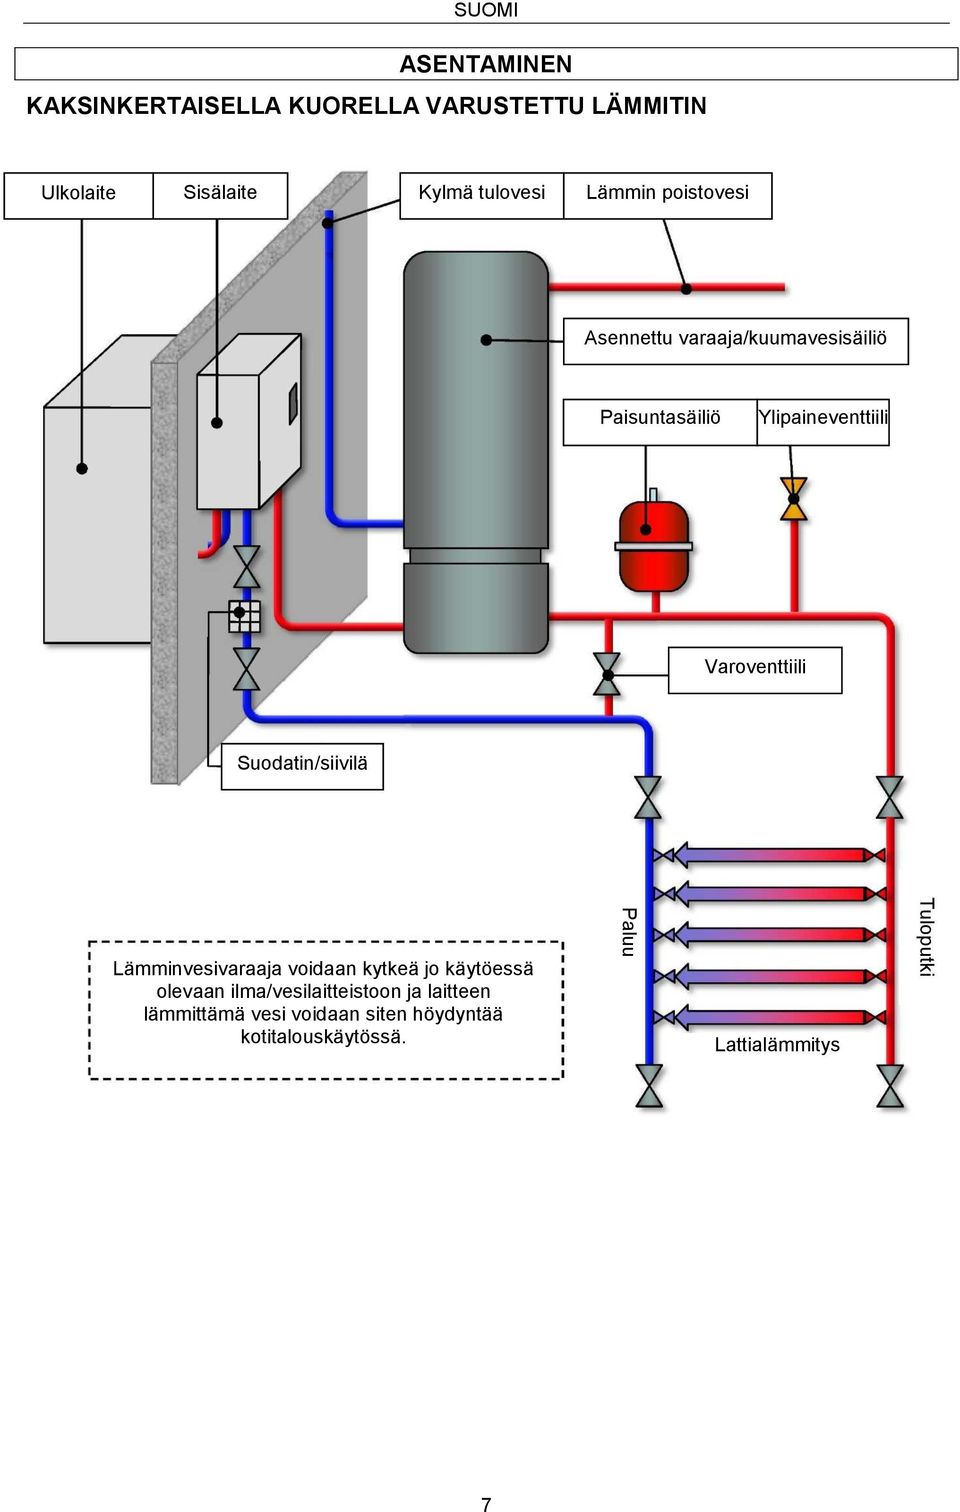 Ylipaineventtiili Varoventtiili Suodatin/siivilä Lämminvesivaraaja voidaan kytkeä jo käytöessä